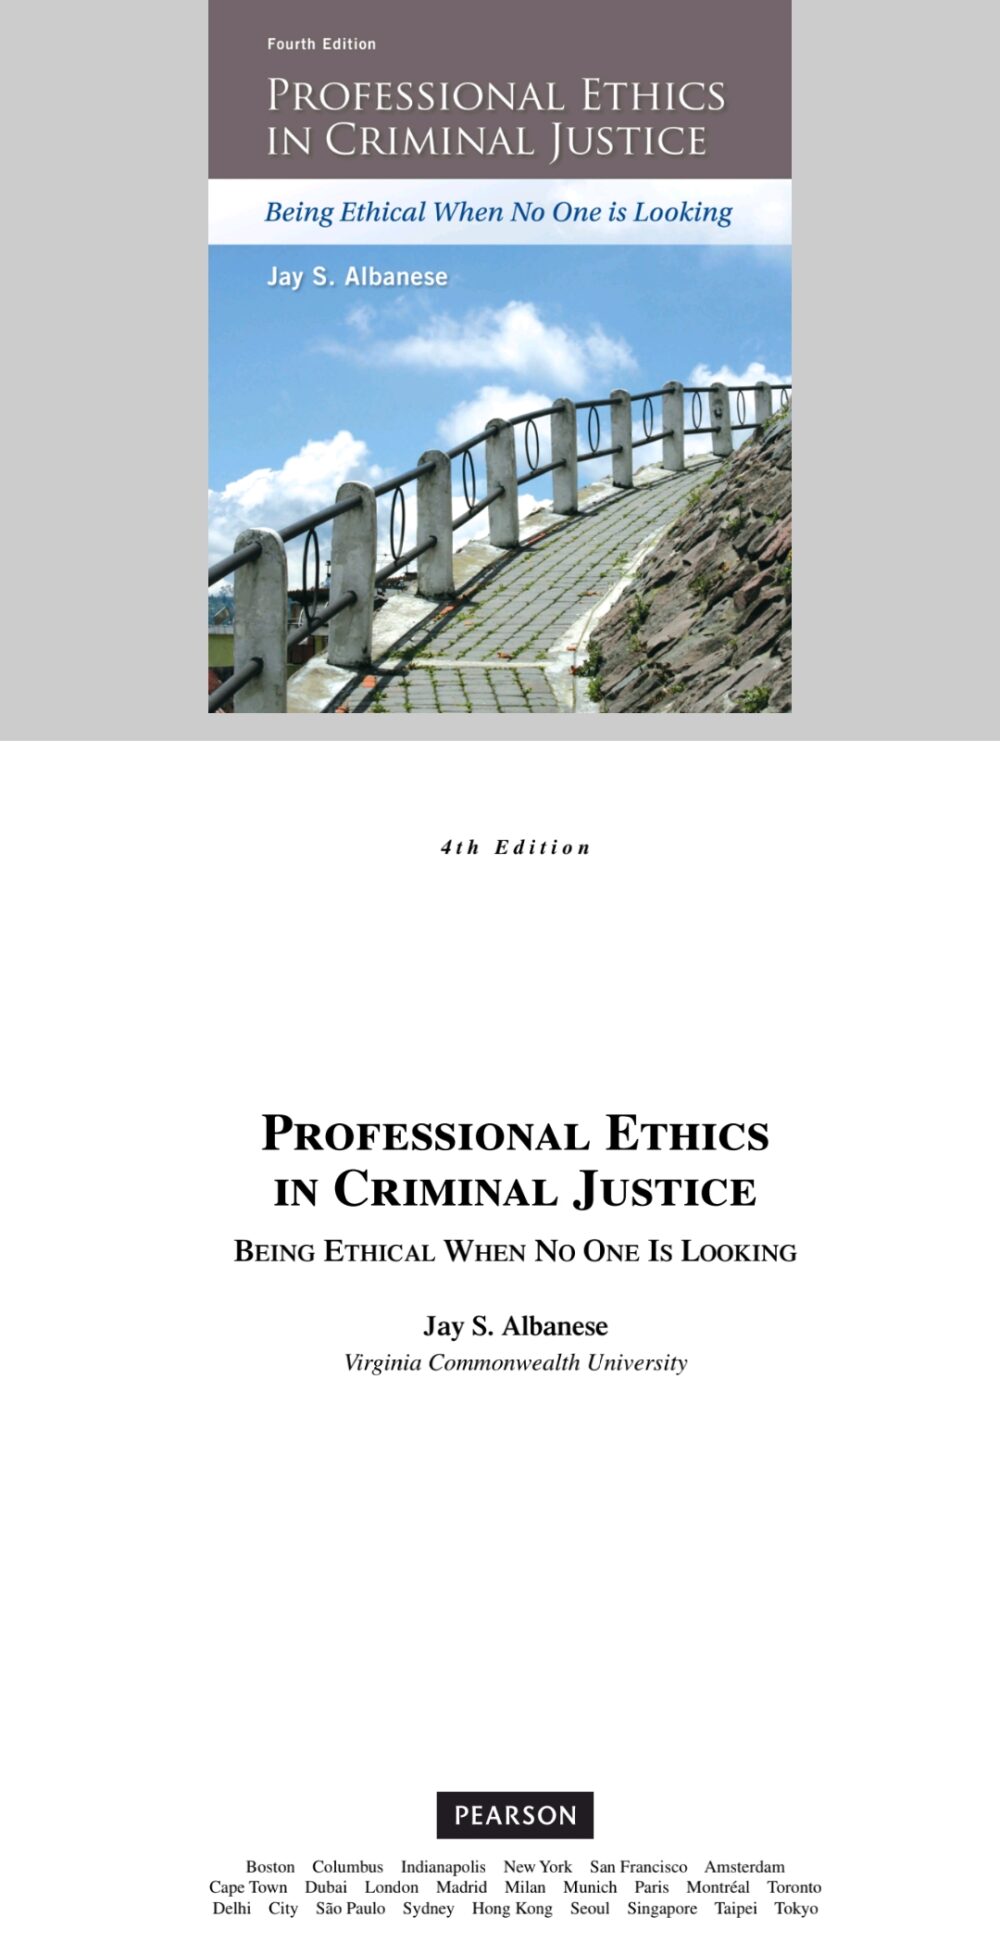 Berufsethik in der Strafjustiz: Ethisch sein, wenn niemand hinschaut 4. Auflage (Vierte Auflage)